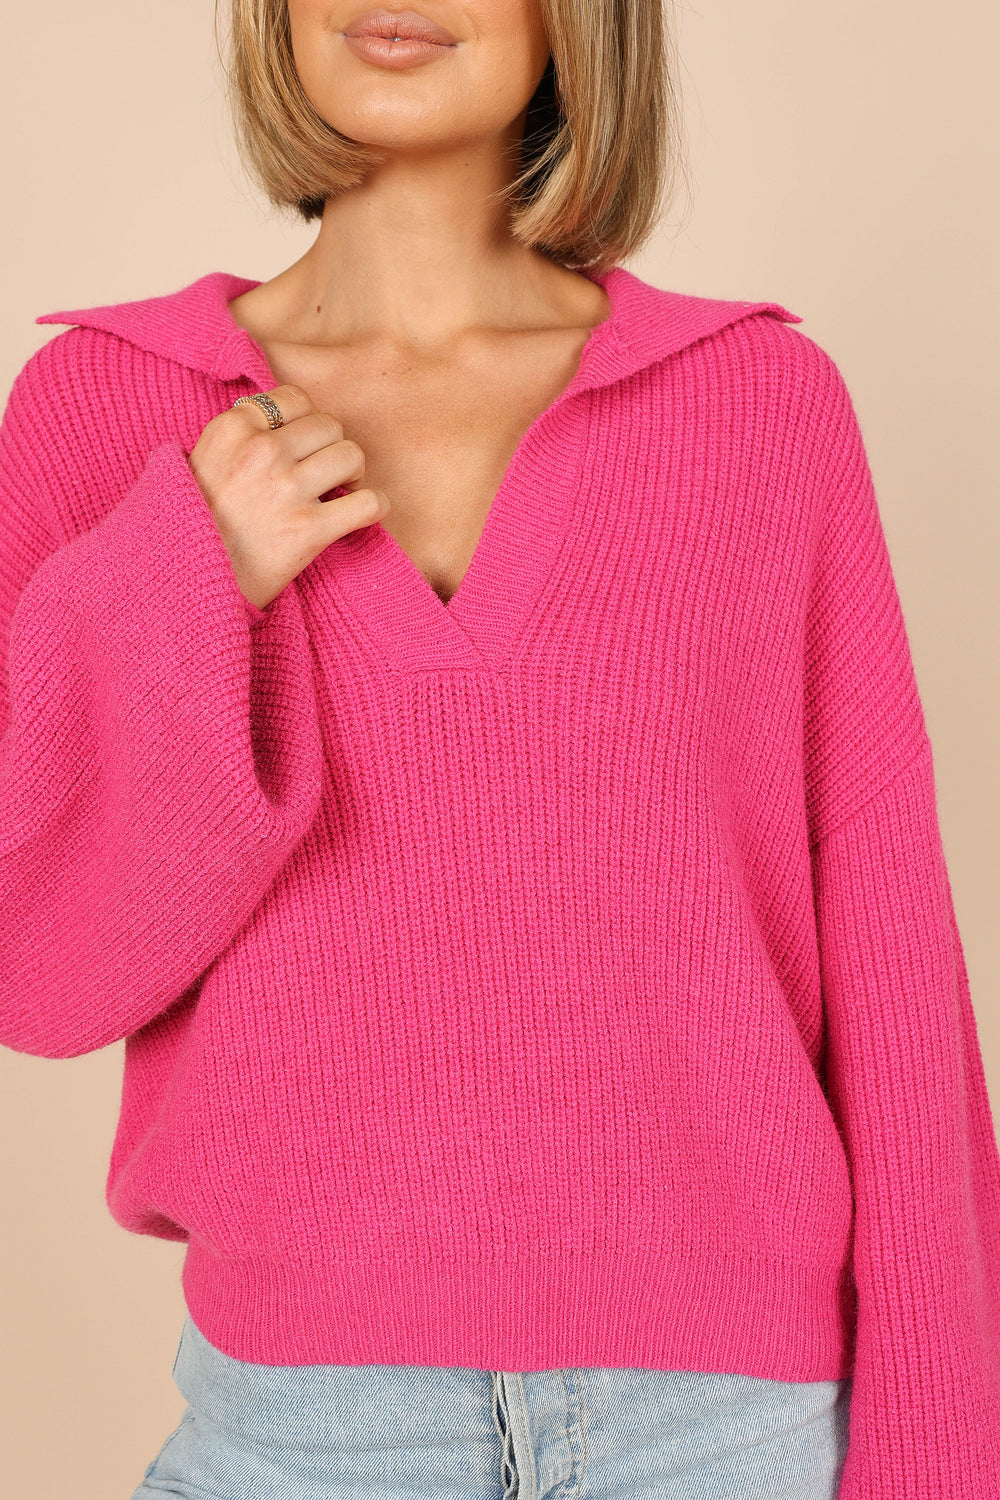 KNITWEAR @Rooney Vneck Knit Sweater - Hot Pink